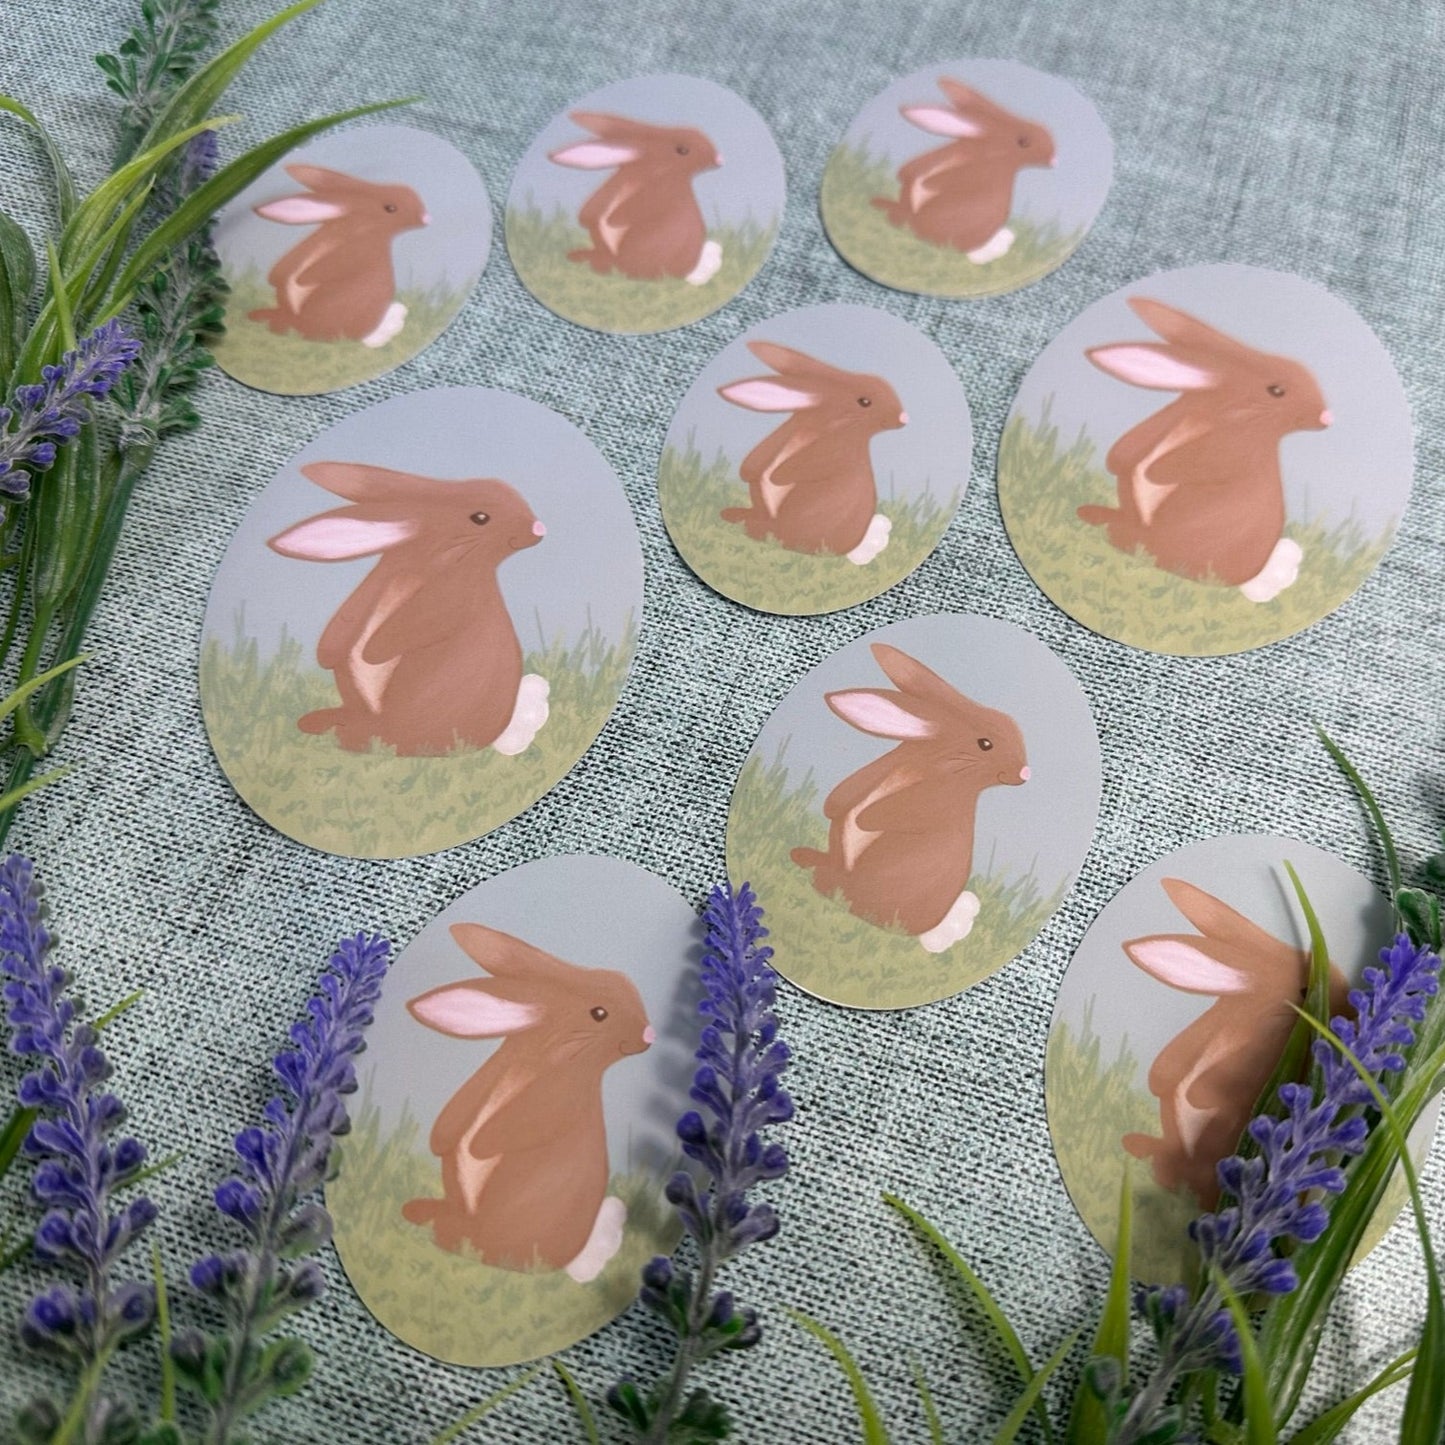 Bunny rabbit in a field Waterproof Vinyl Sticker